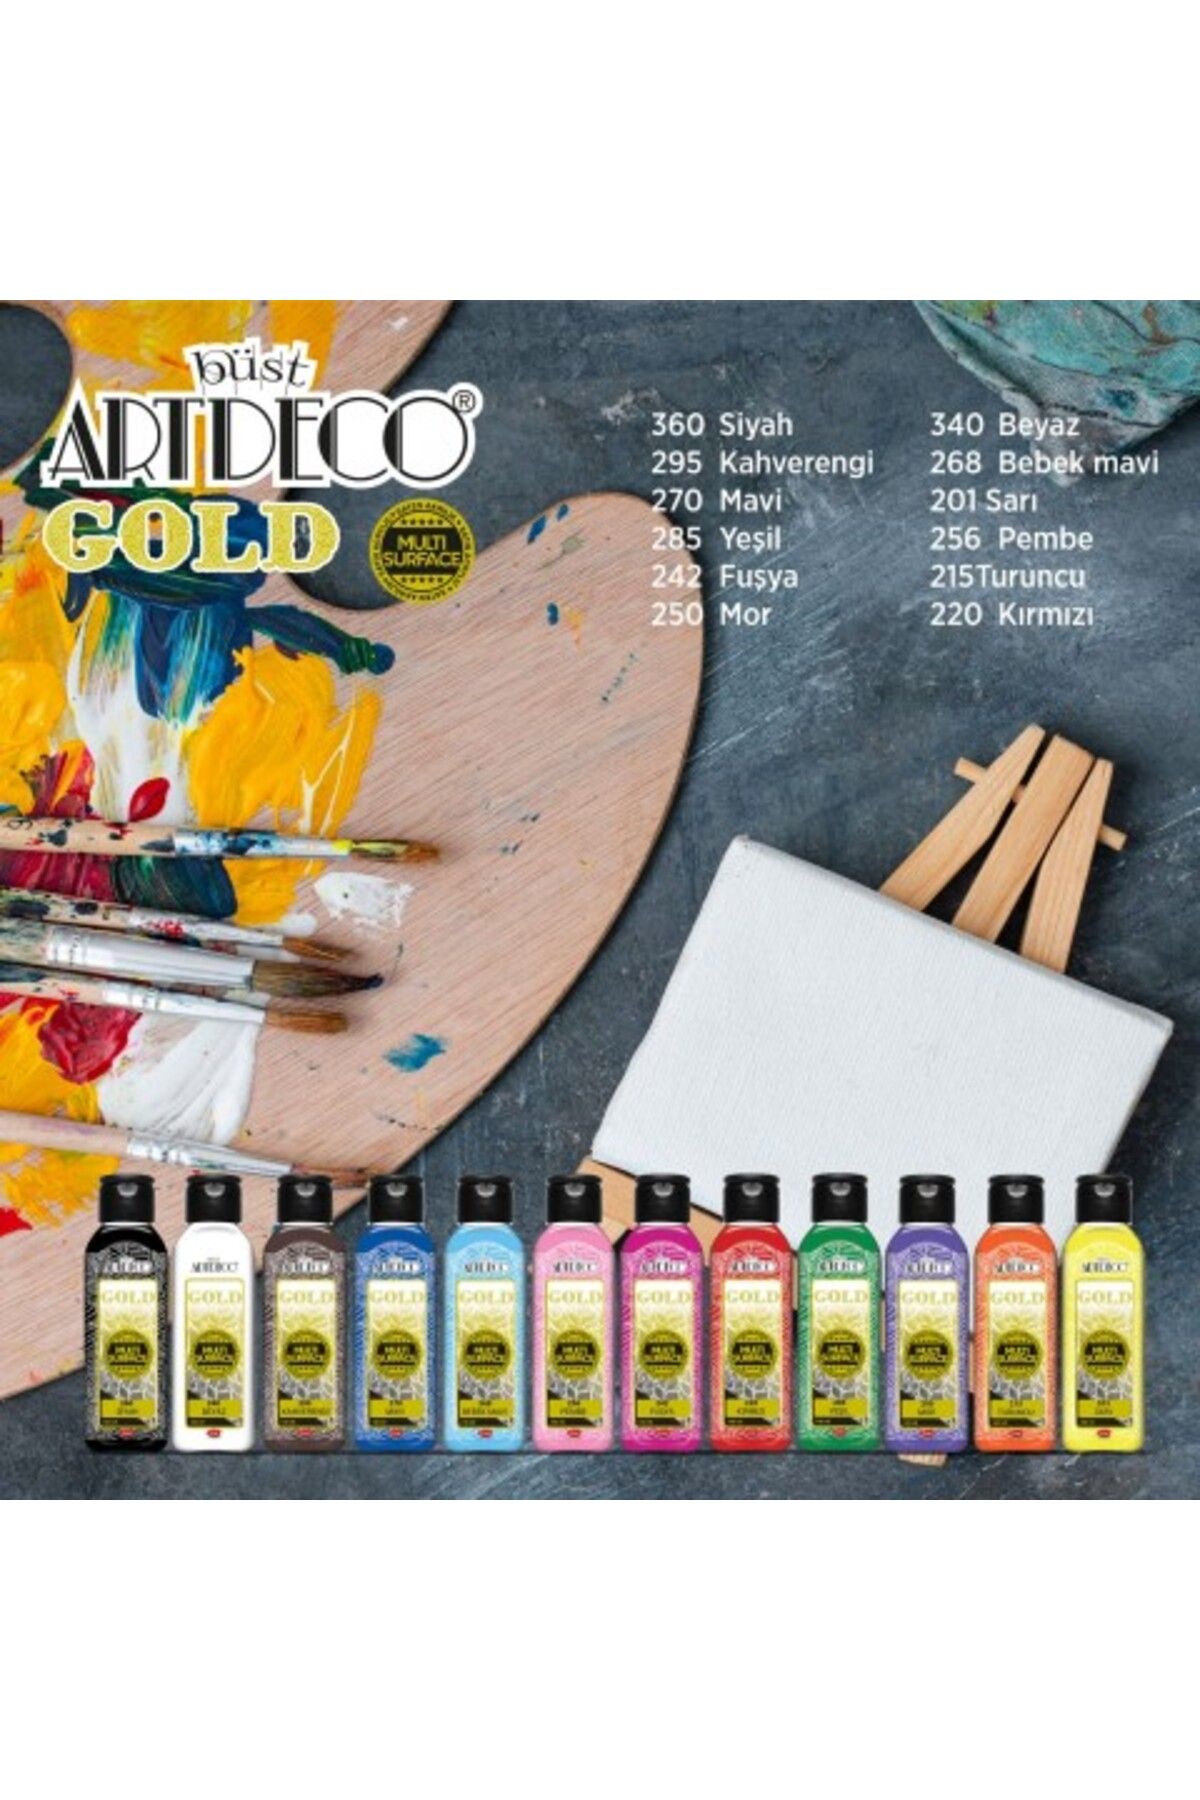 E&D ART Artdeco Gold 140ml MULTİ SURFACE 12'li Tüm Yüzeylere Uygun Akrilik Boya Seti